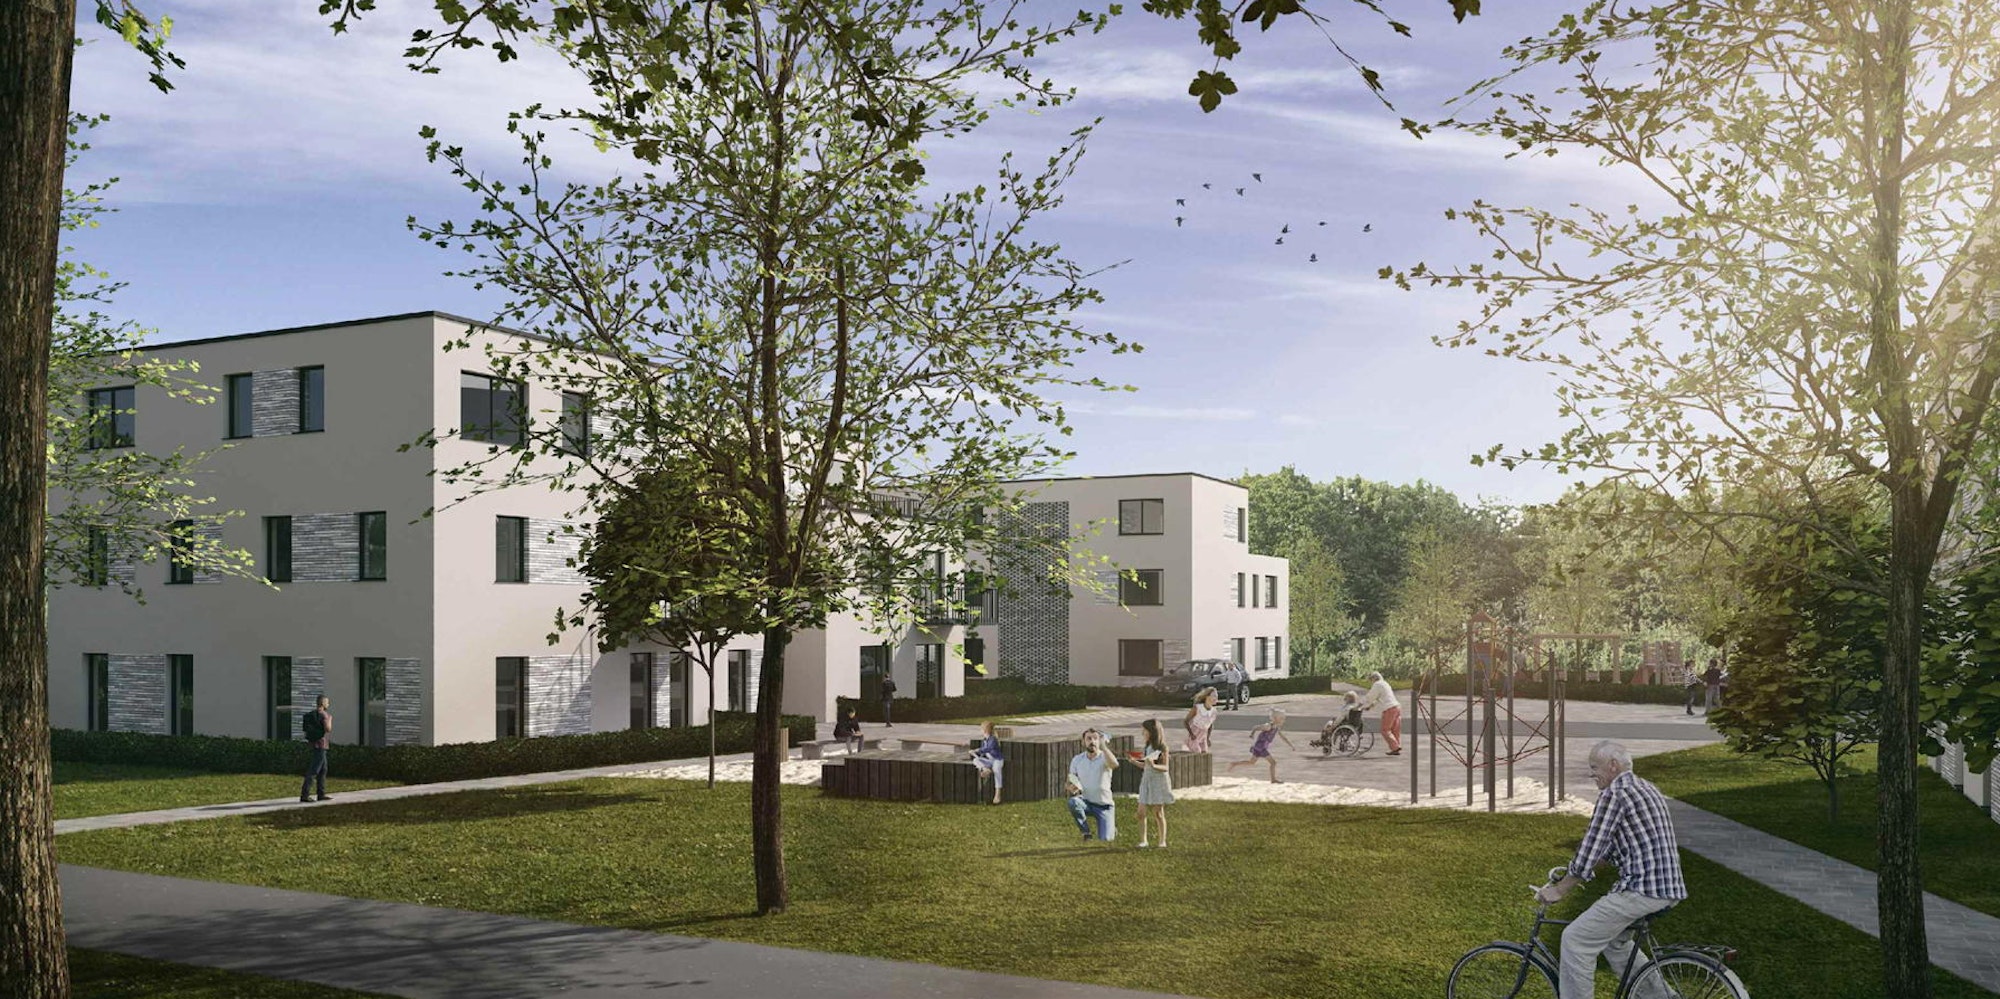 Ein inklusives Wohnquartier mit 57 Wohneinheiten ist an der Helmholtzstraße geplant. Der Stadtrat wird darüber in einer Sondersitzung noch einmal diskutieren.